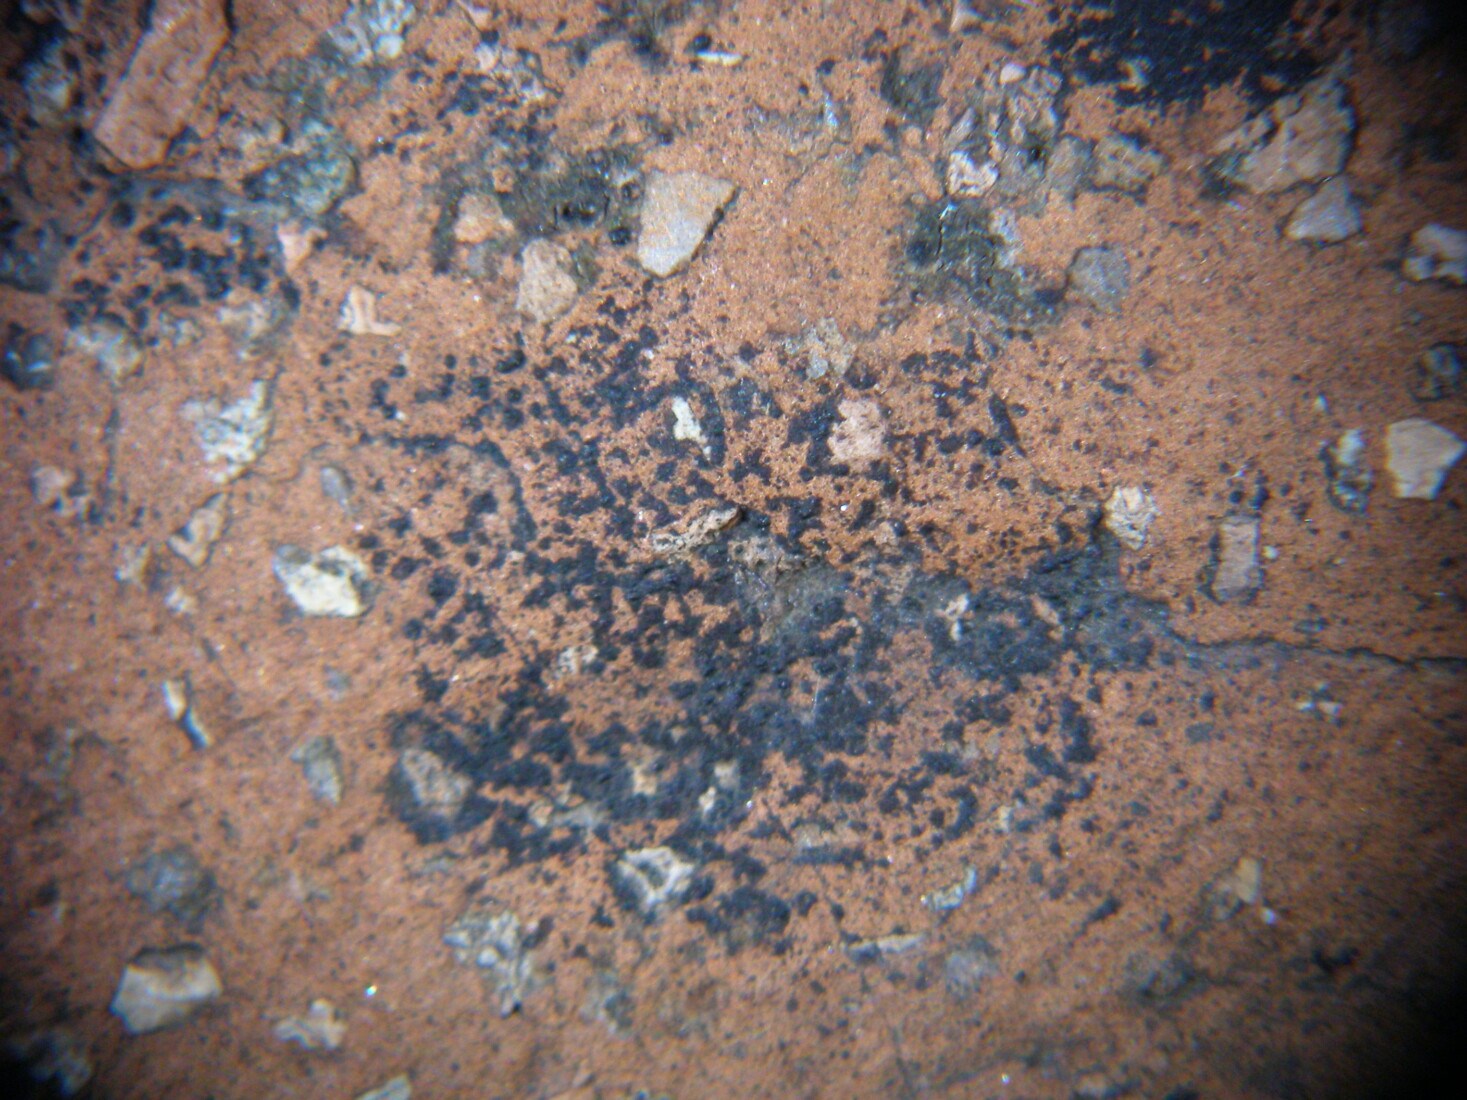 Φωτογραφία από την παρατήρηση στο μικροσκόπιο βιολογικών επικαθήσεων στην επιφάνεια κεραμικού έργου της Ευθυμιάδη.